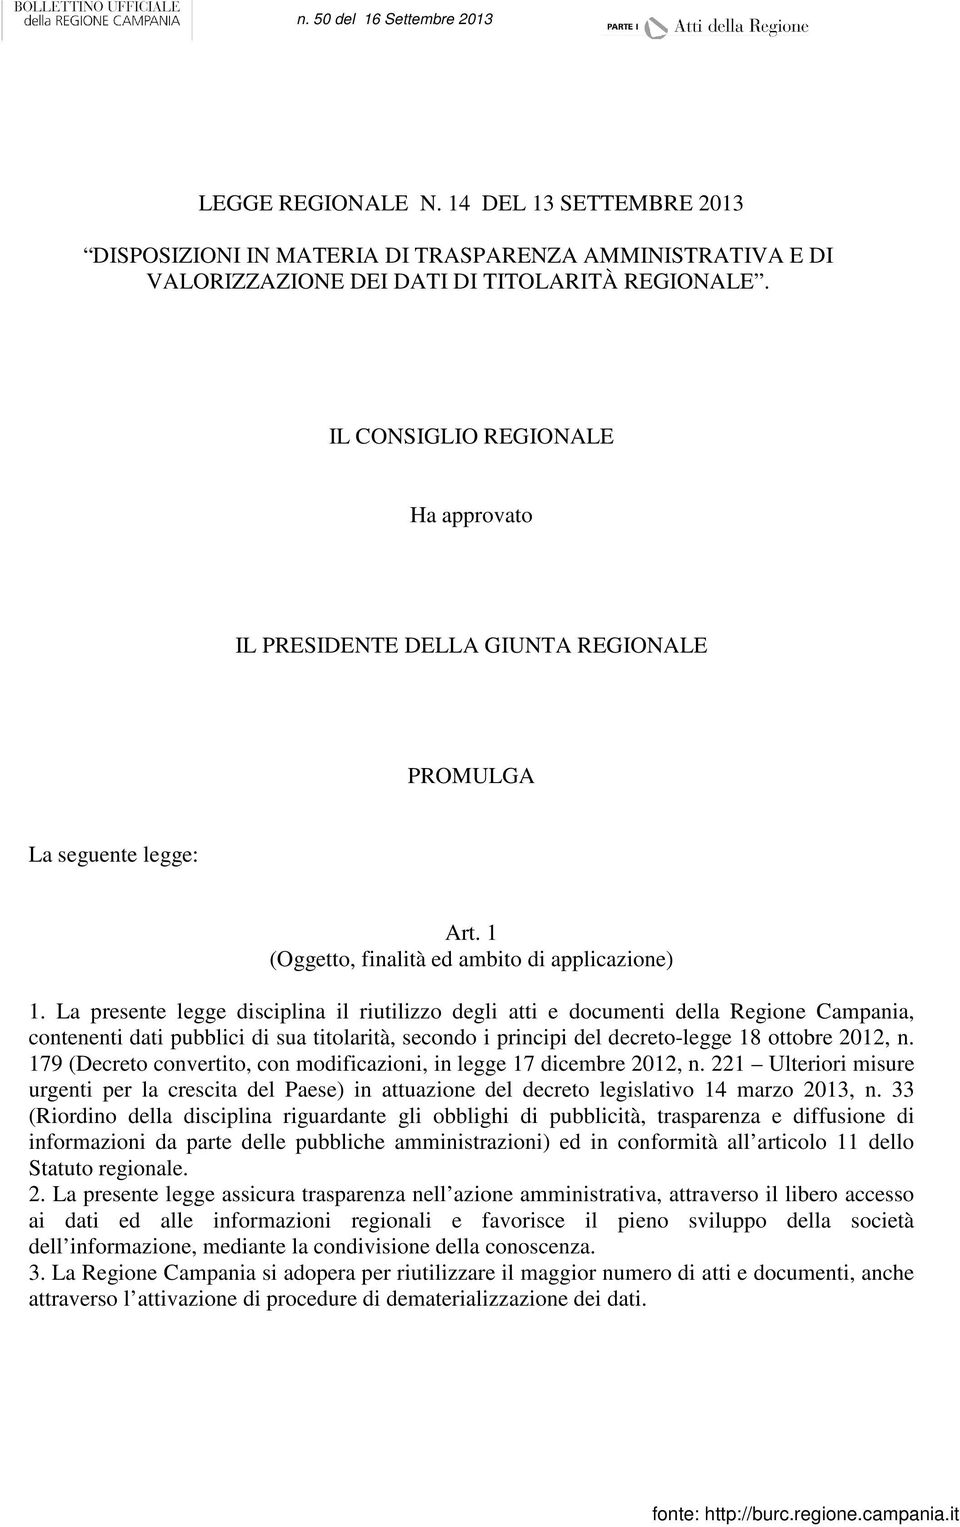 La presente legge disciplina il riutilizzo degli atti e documenti della Regione Campania, contenenti dati pubblici di sua titolarità, secondo i principi del decreto-legge 18 ottobre 2012, n.